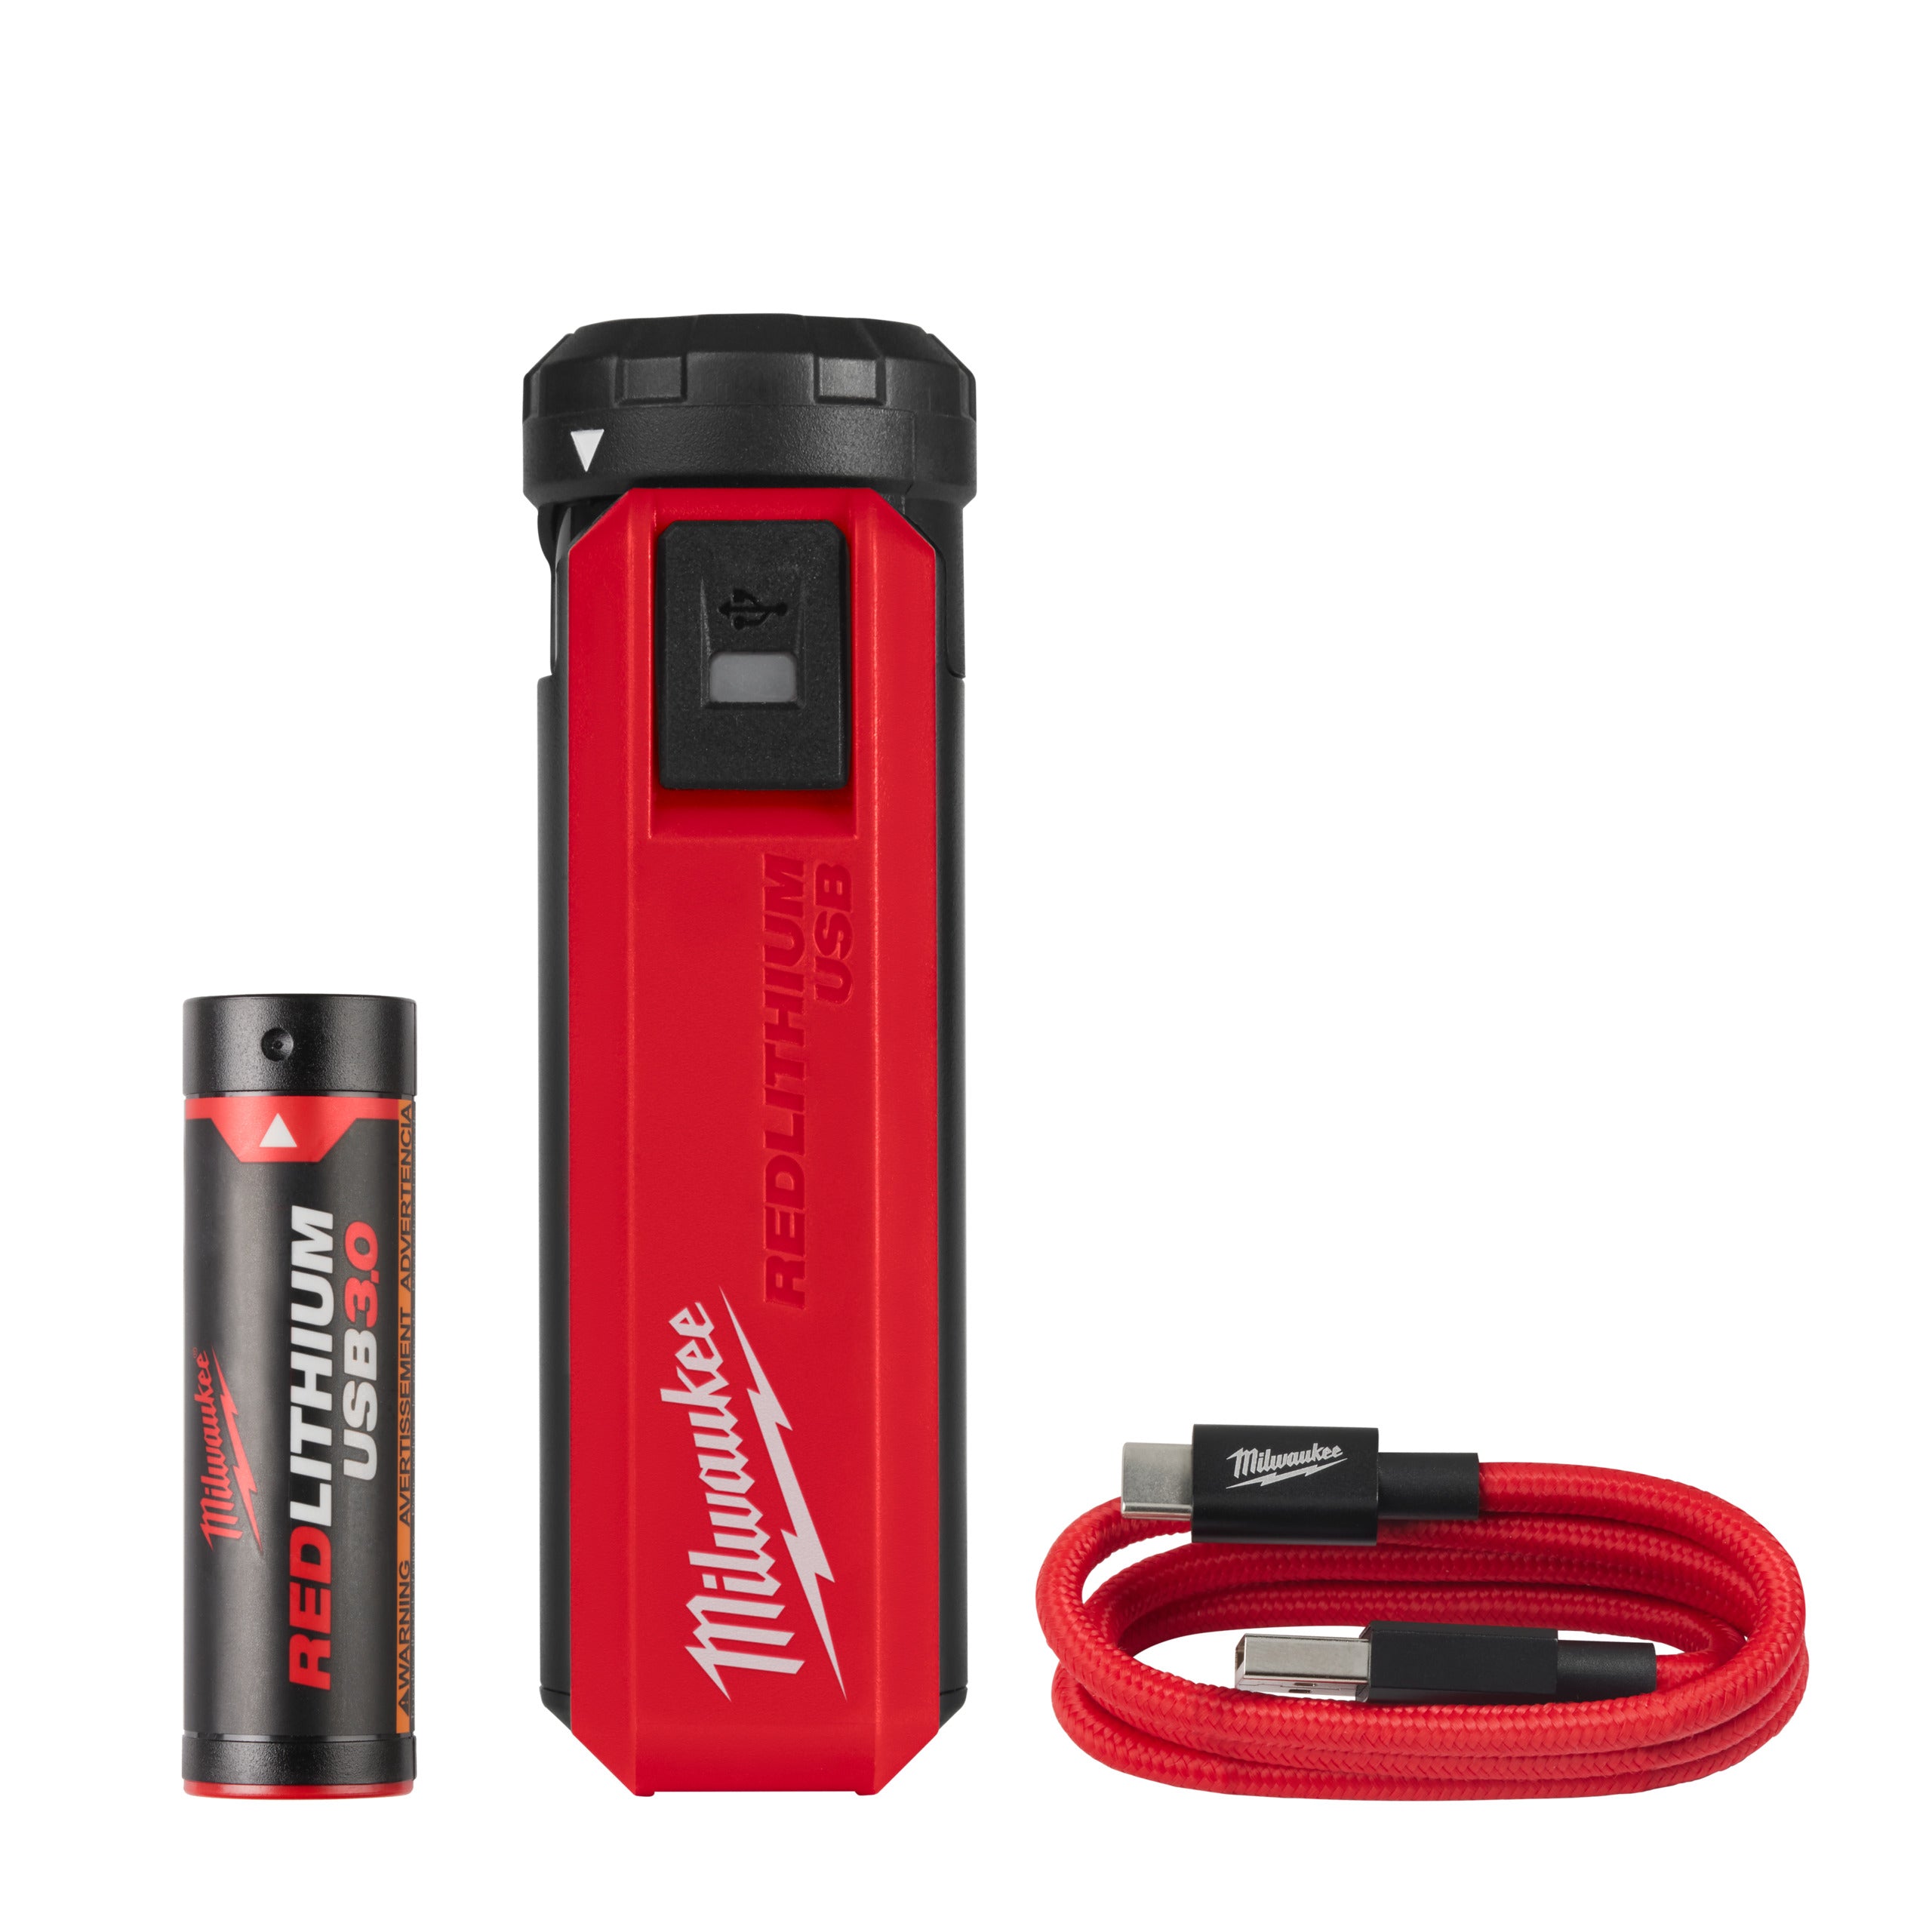 Kit REDLITHIUM L4PPS-301 USB sursă de alimentare portabilă și încărcător Milwaukee, cod 4932493335